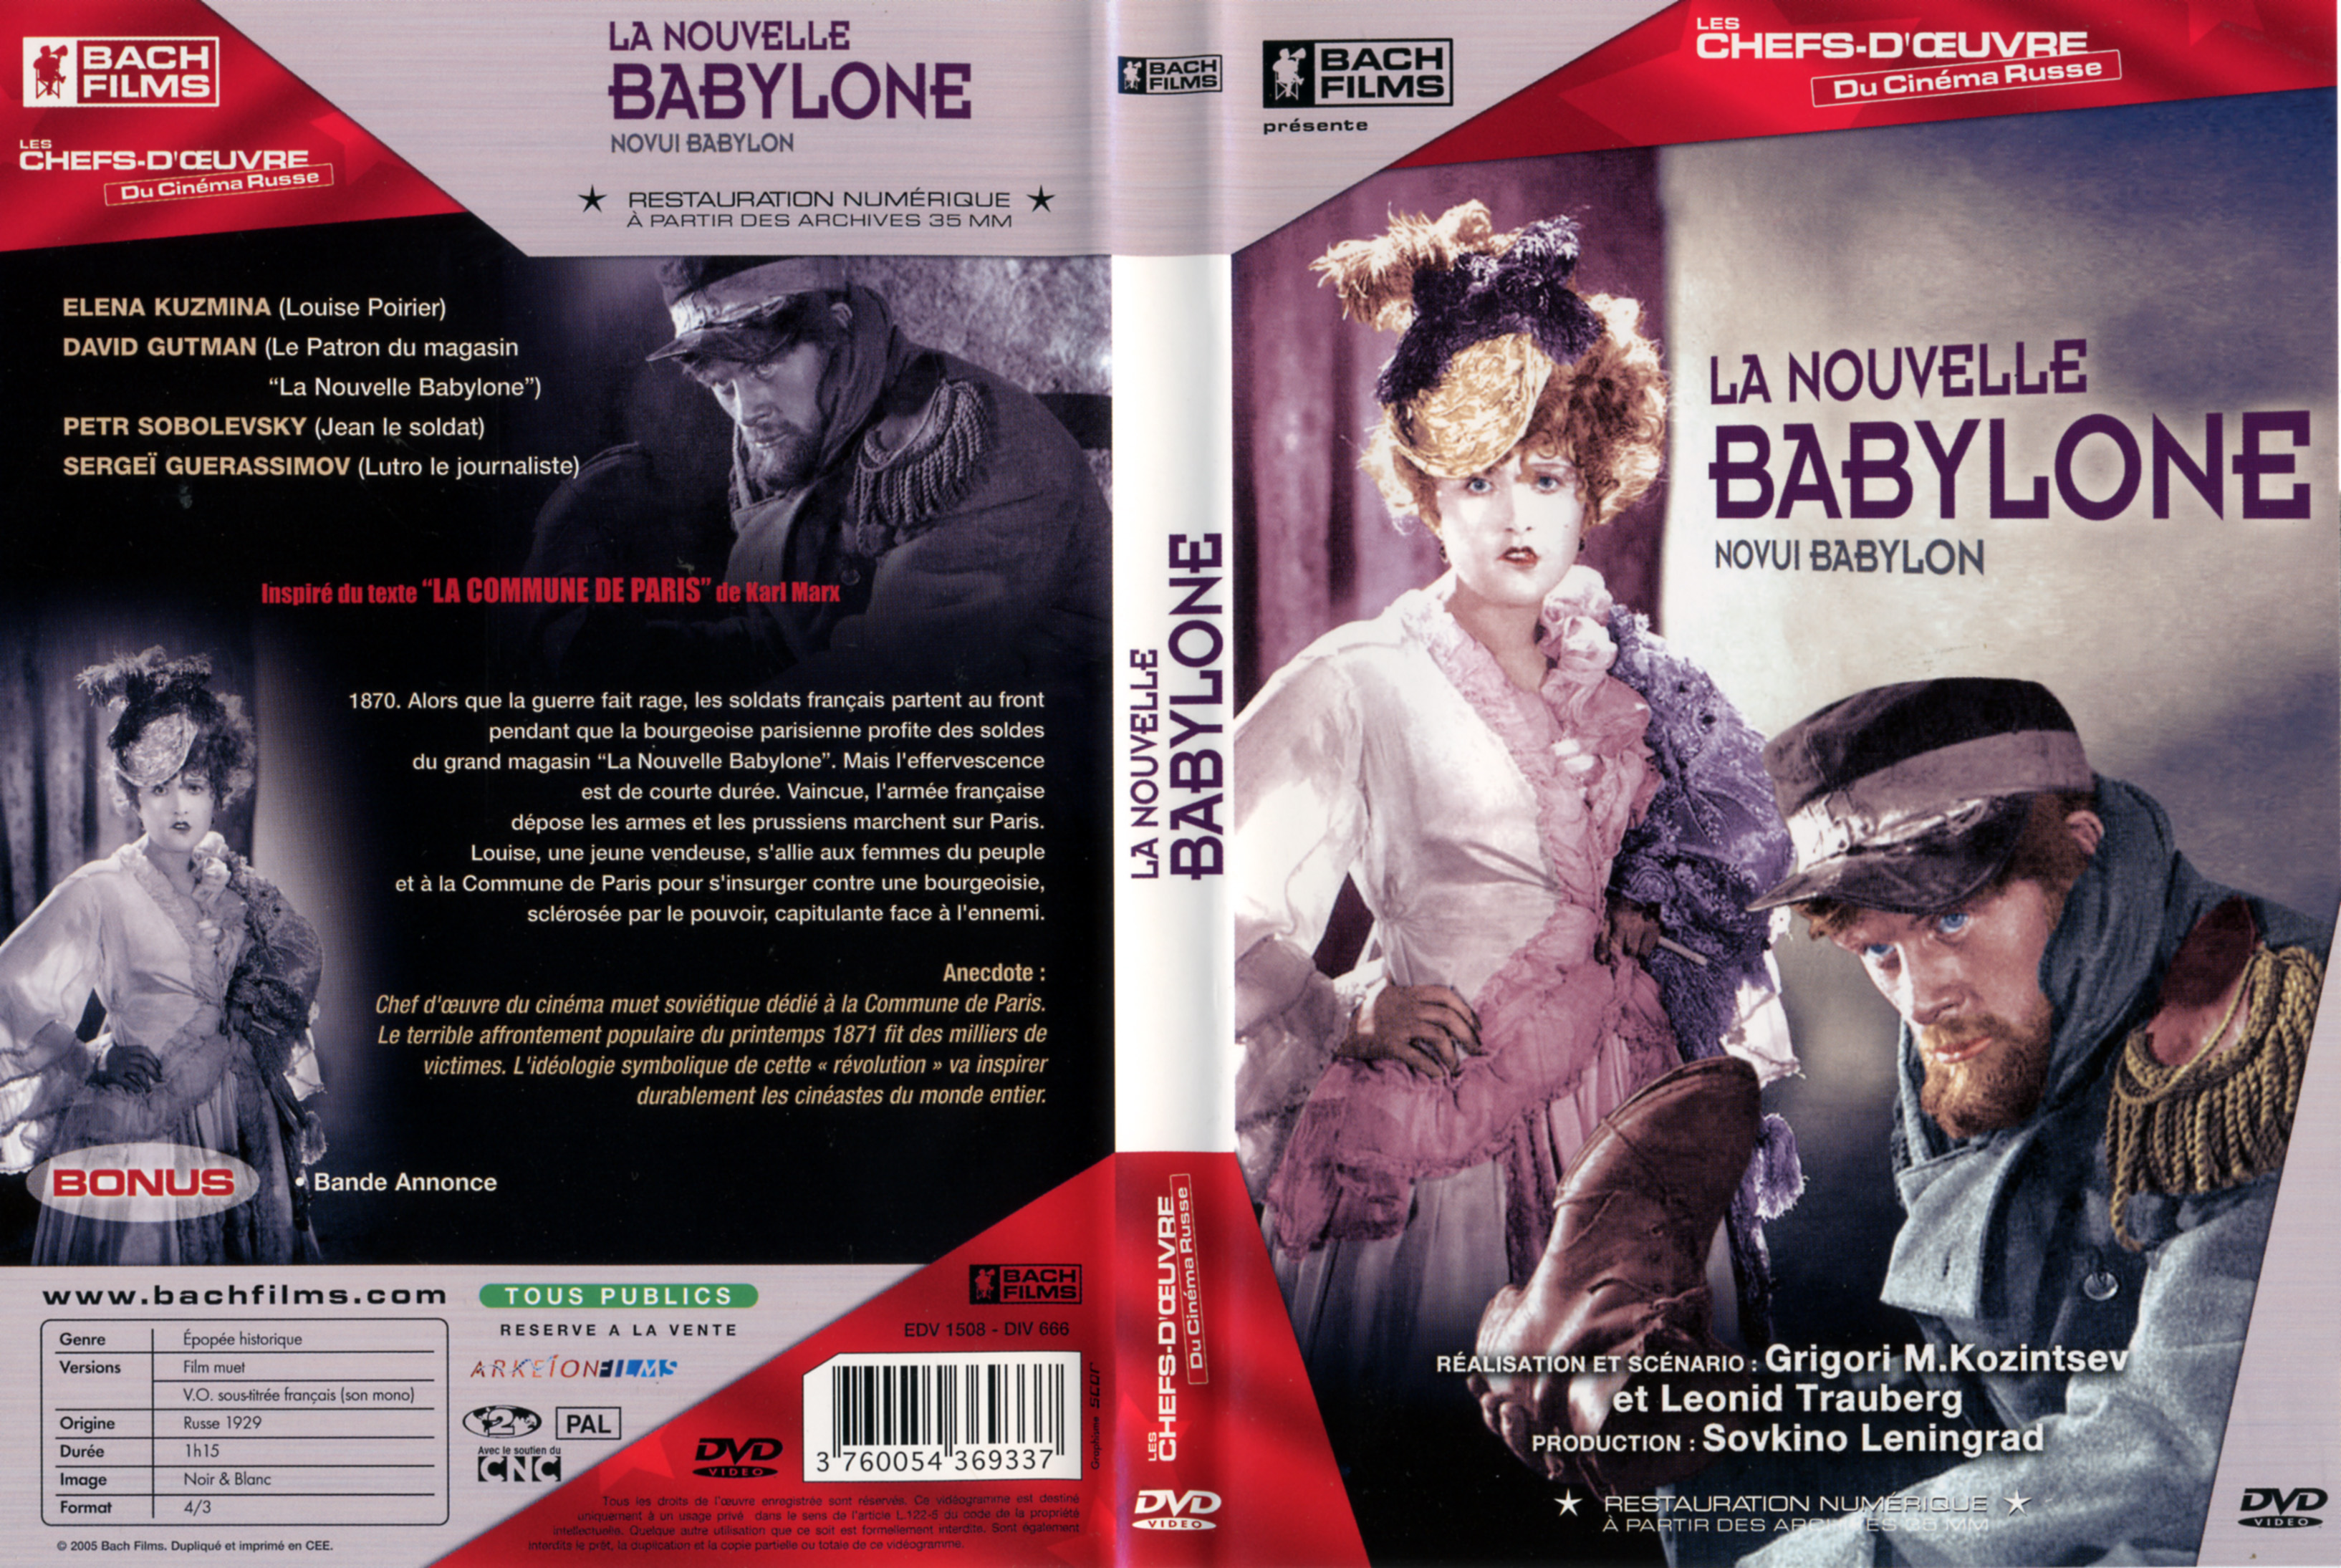 Jaquette DVD La nouvelle babylone